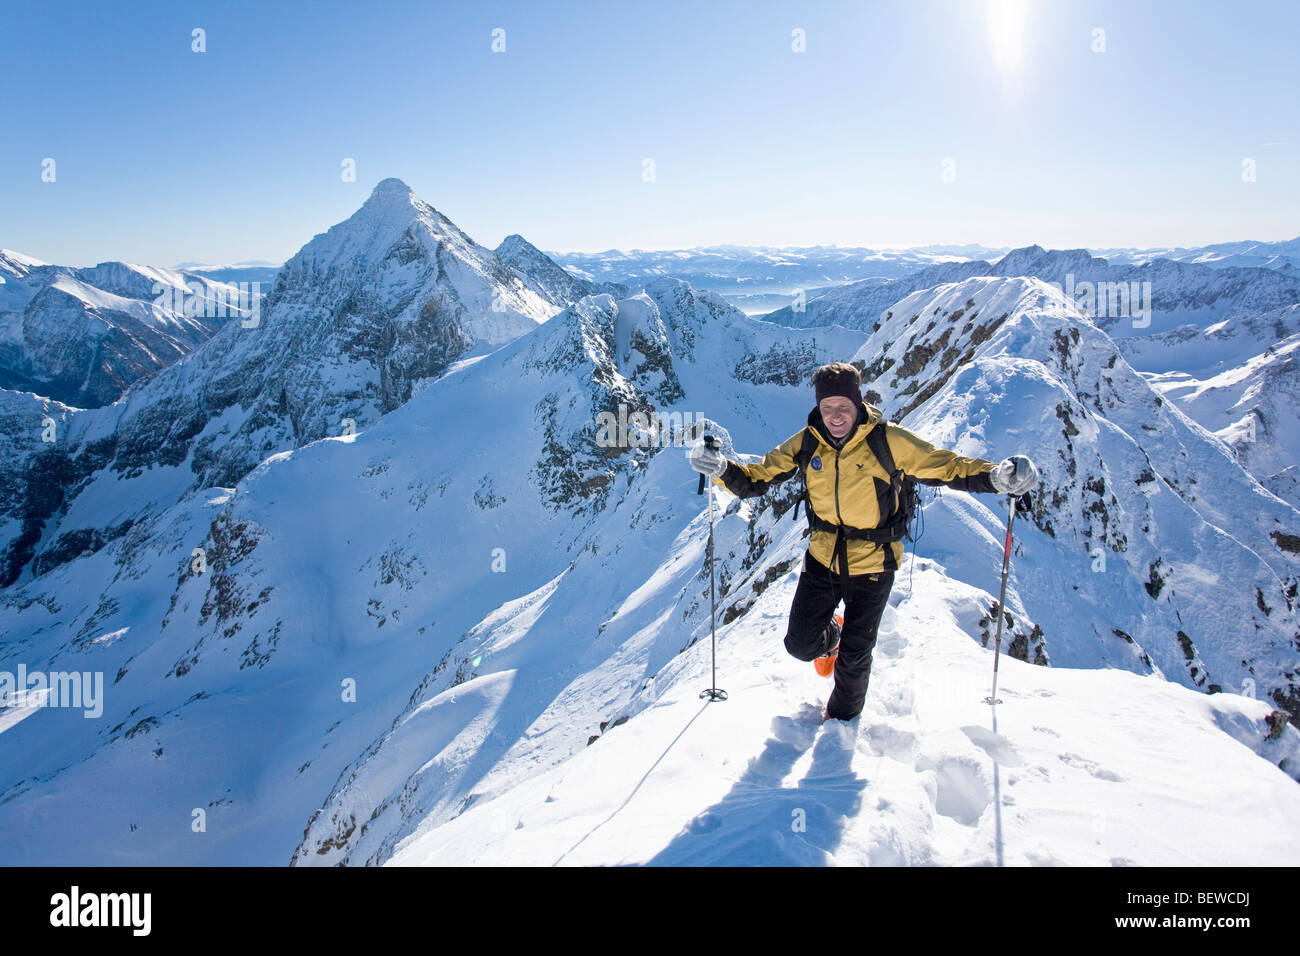 ski mountaineer, Enns Valley, Austria Stock Photo